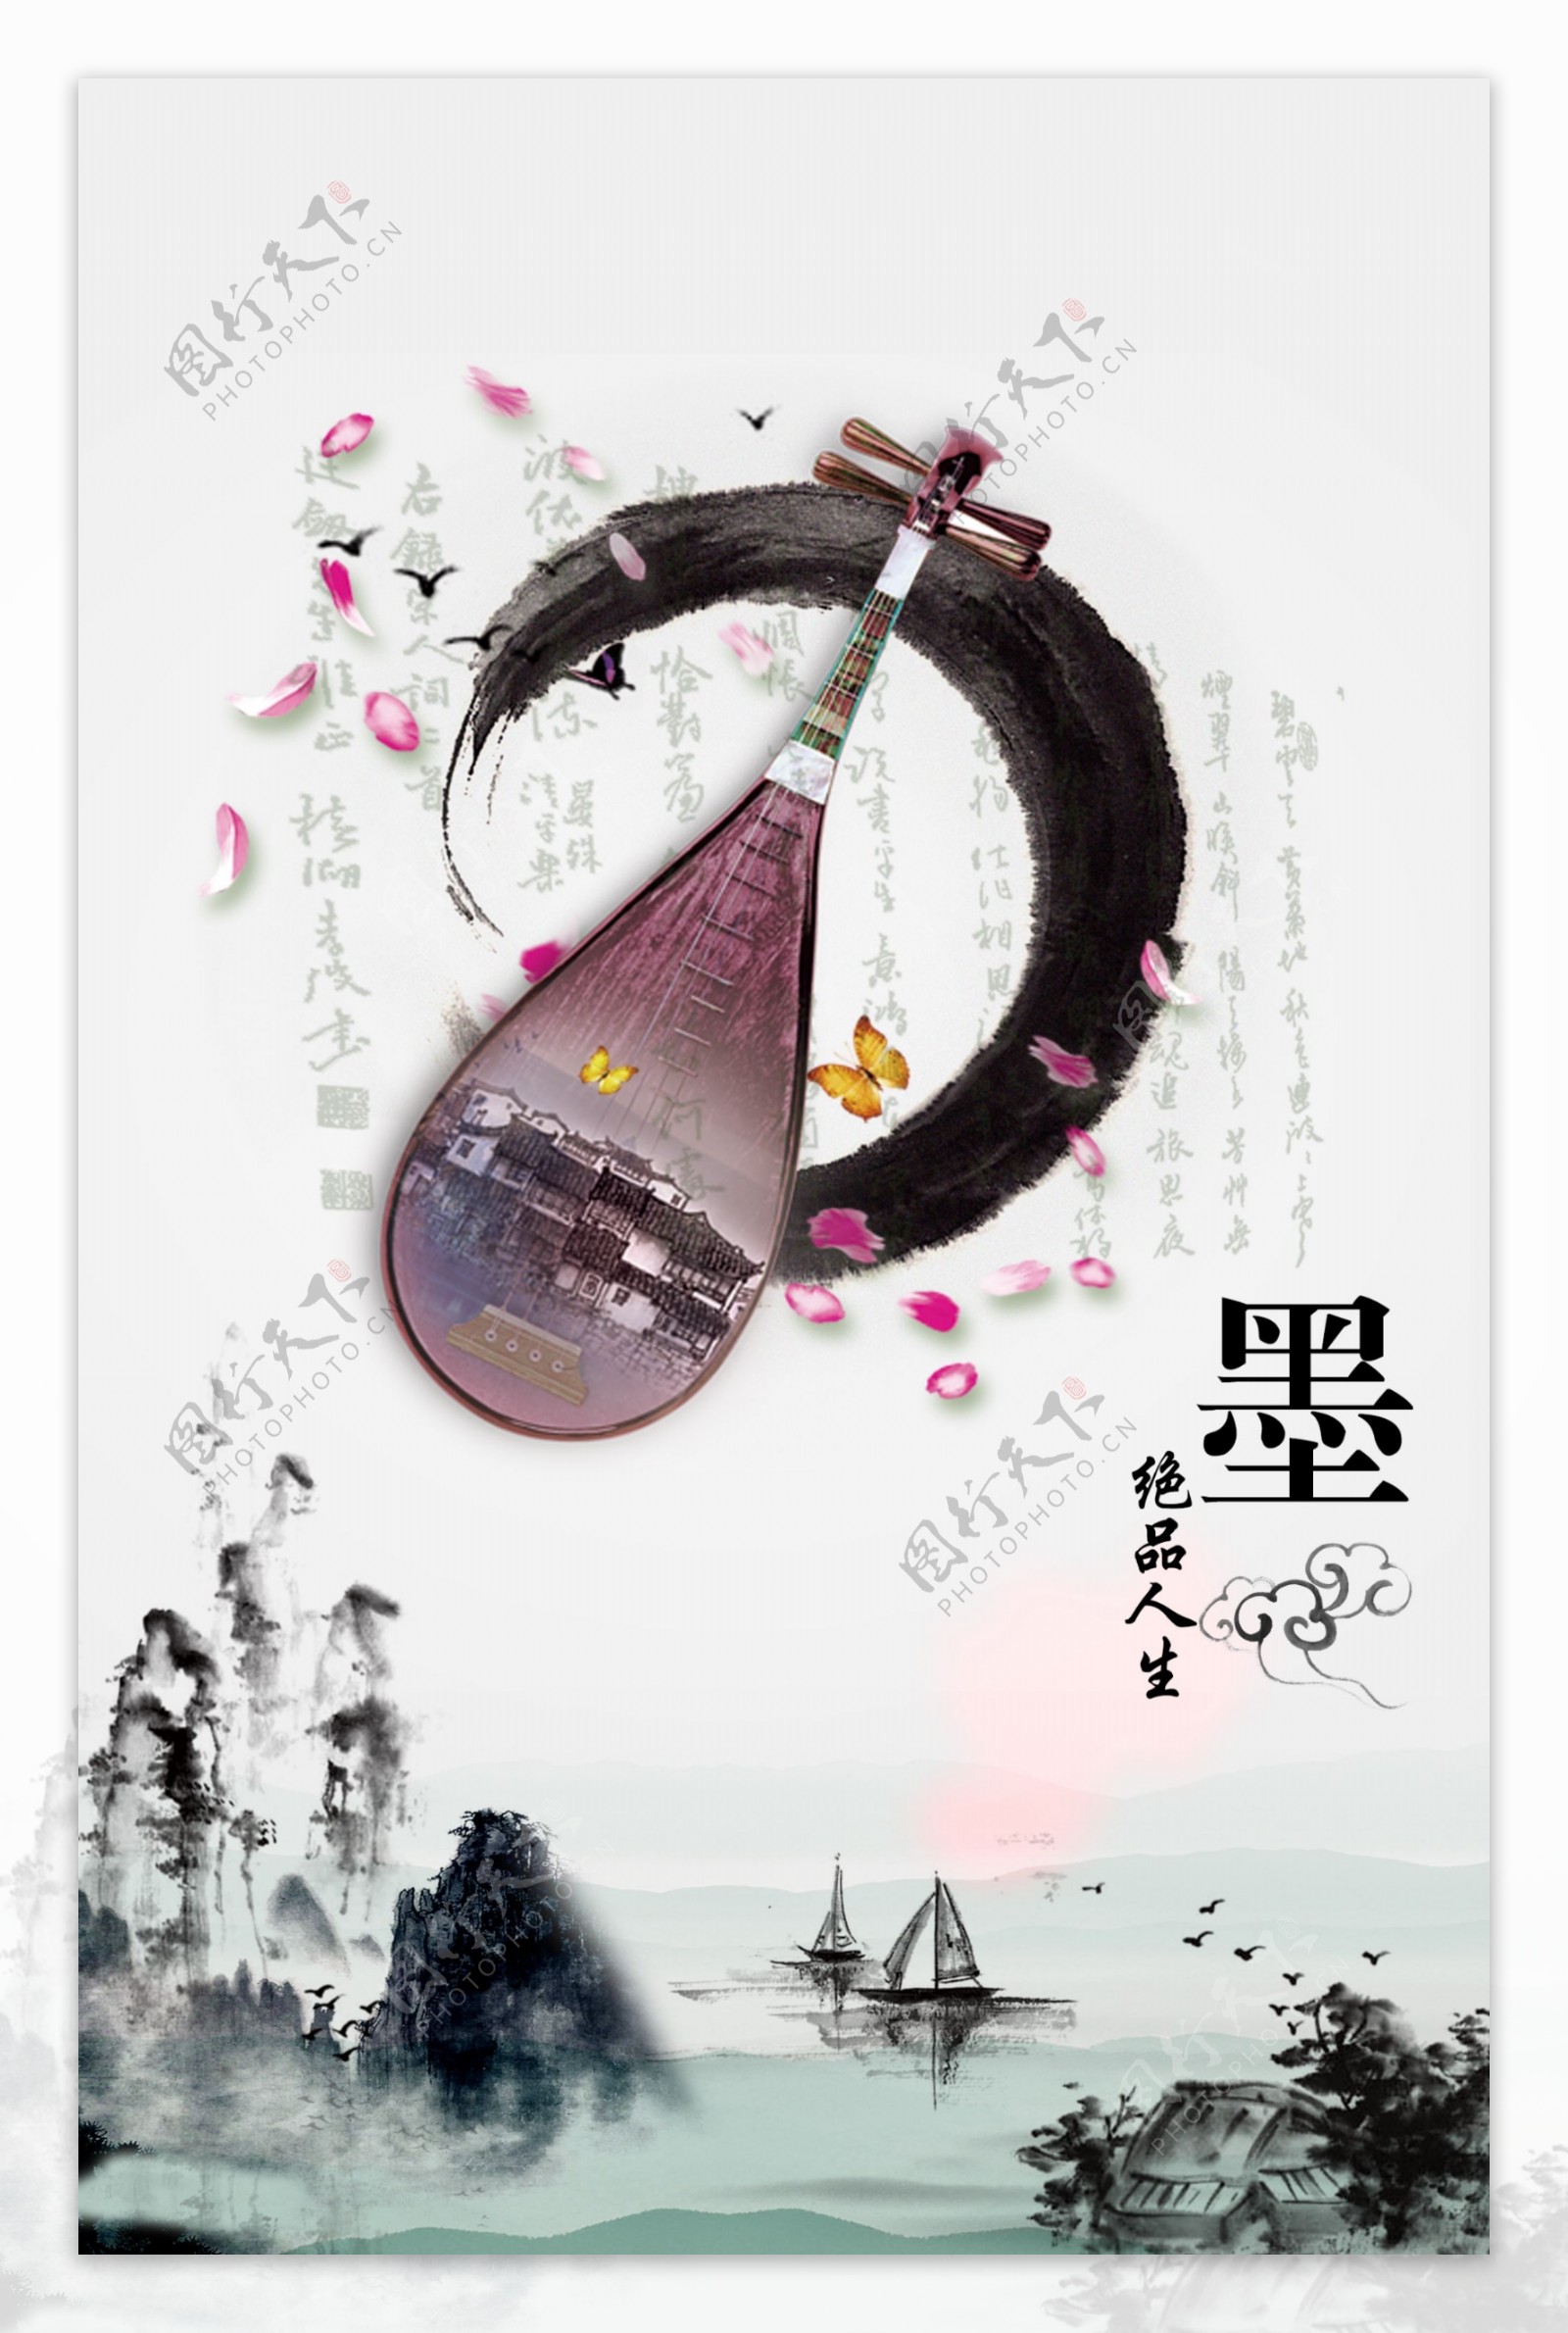 中国风传统水墨文化图片PSD素